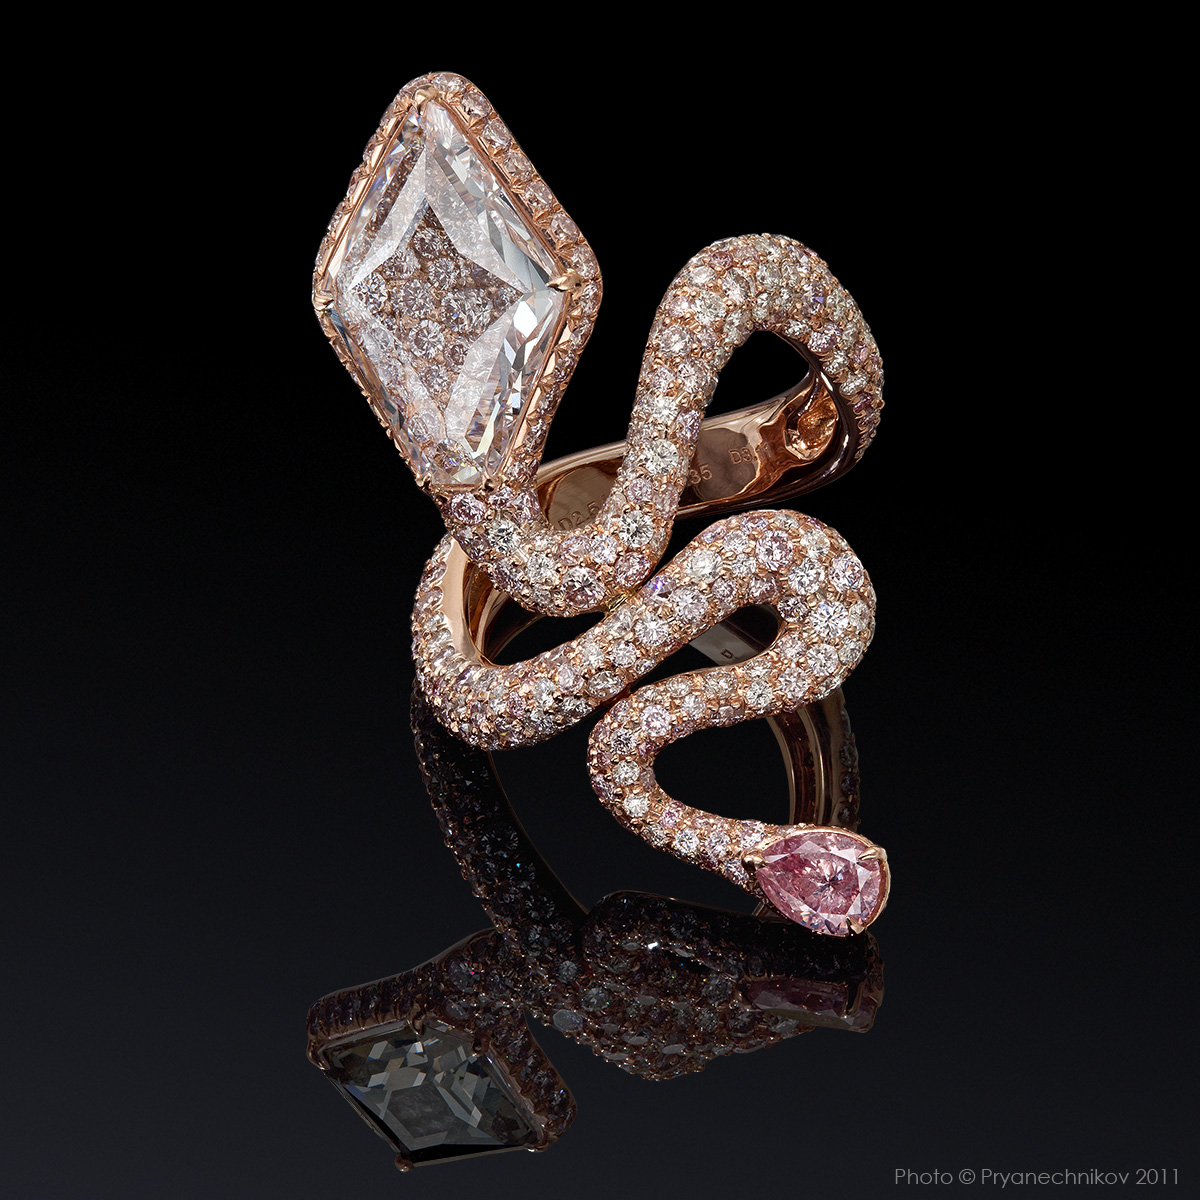 Рекламное фото ювелирных изделий с бриллиантами и драгоценными камнями